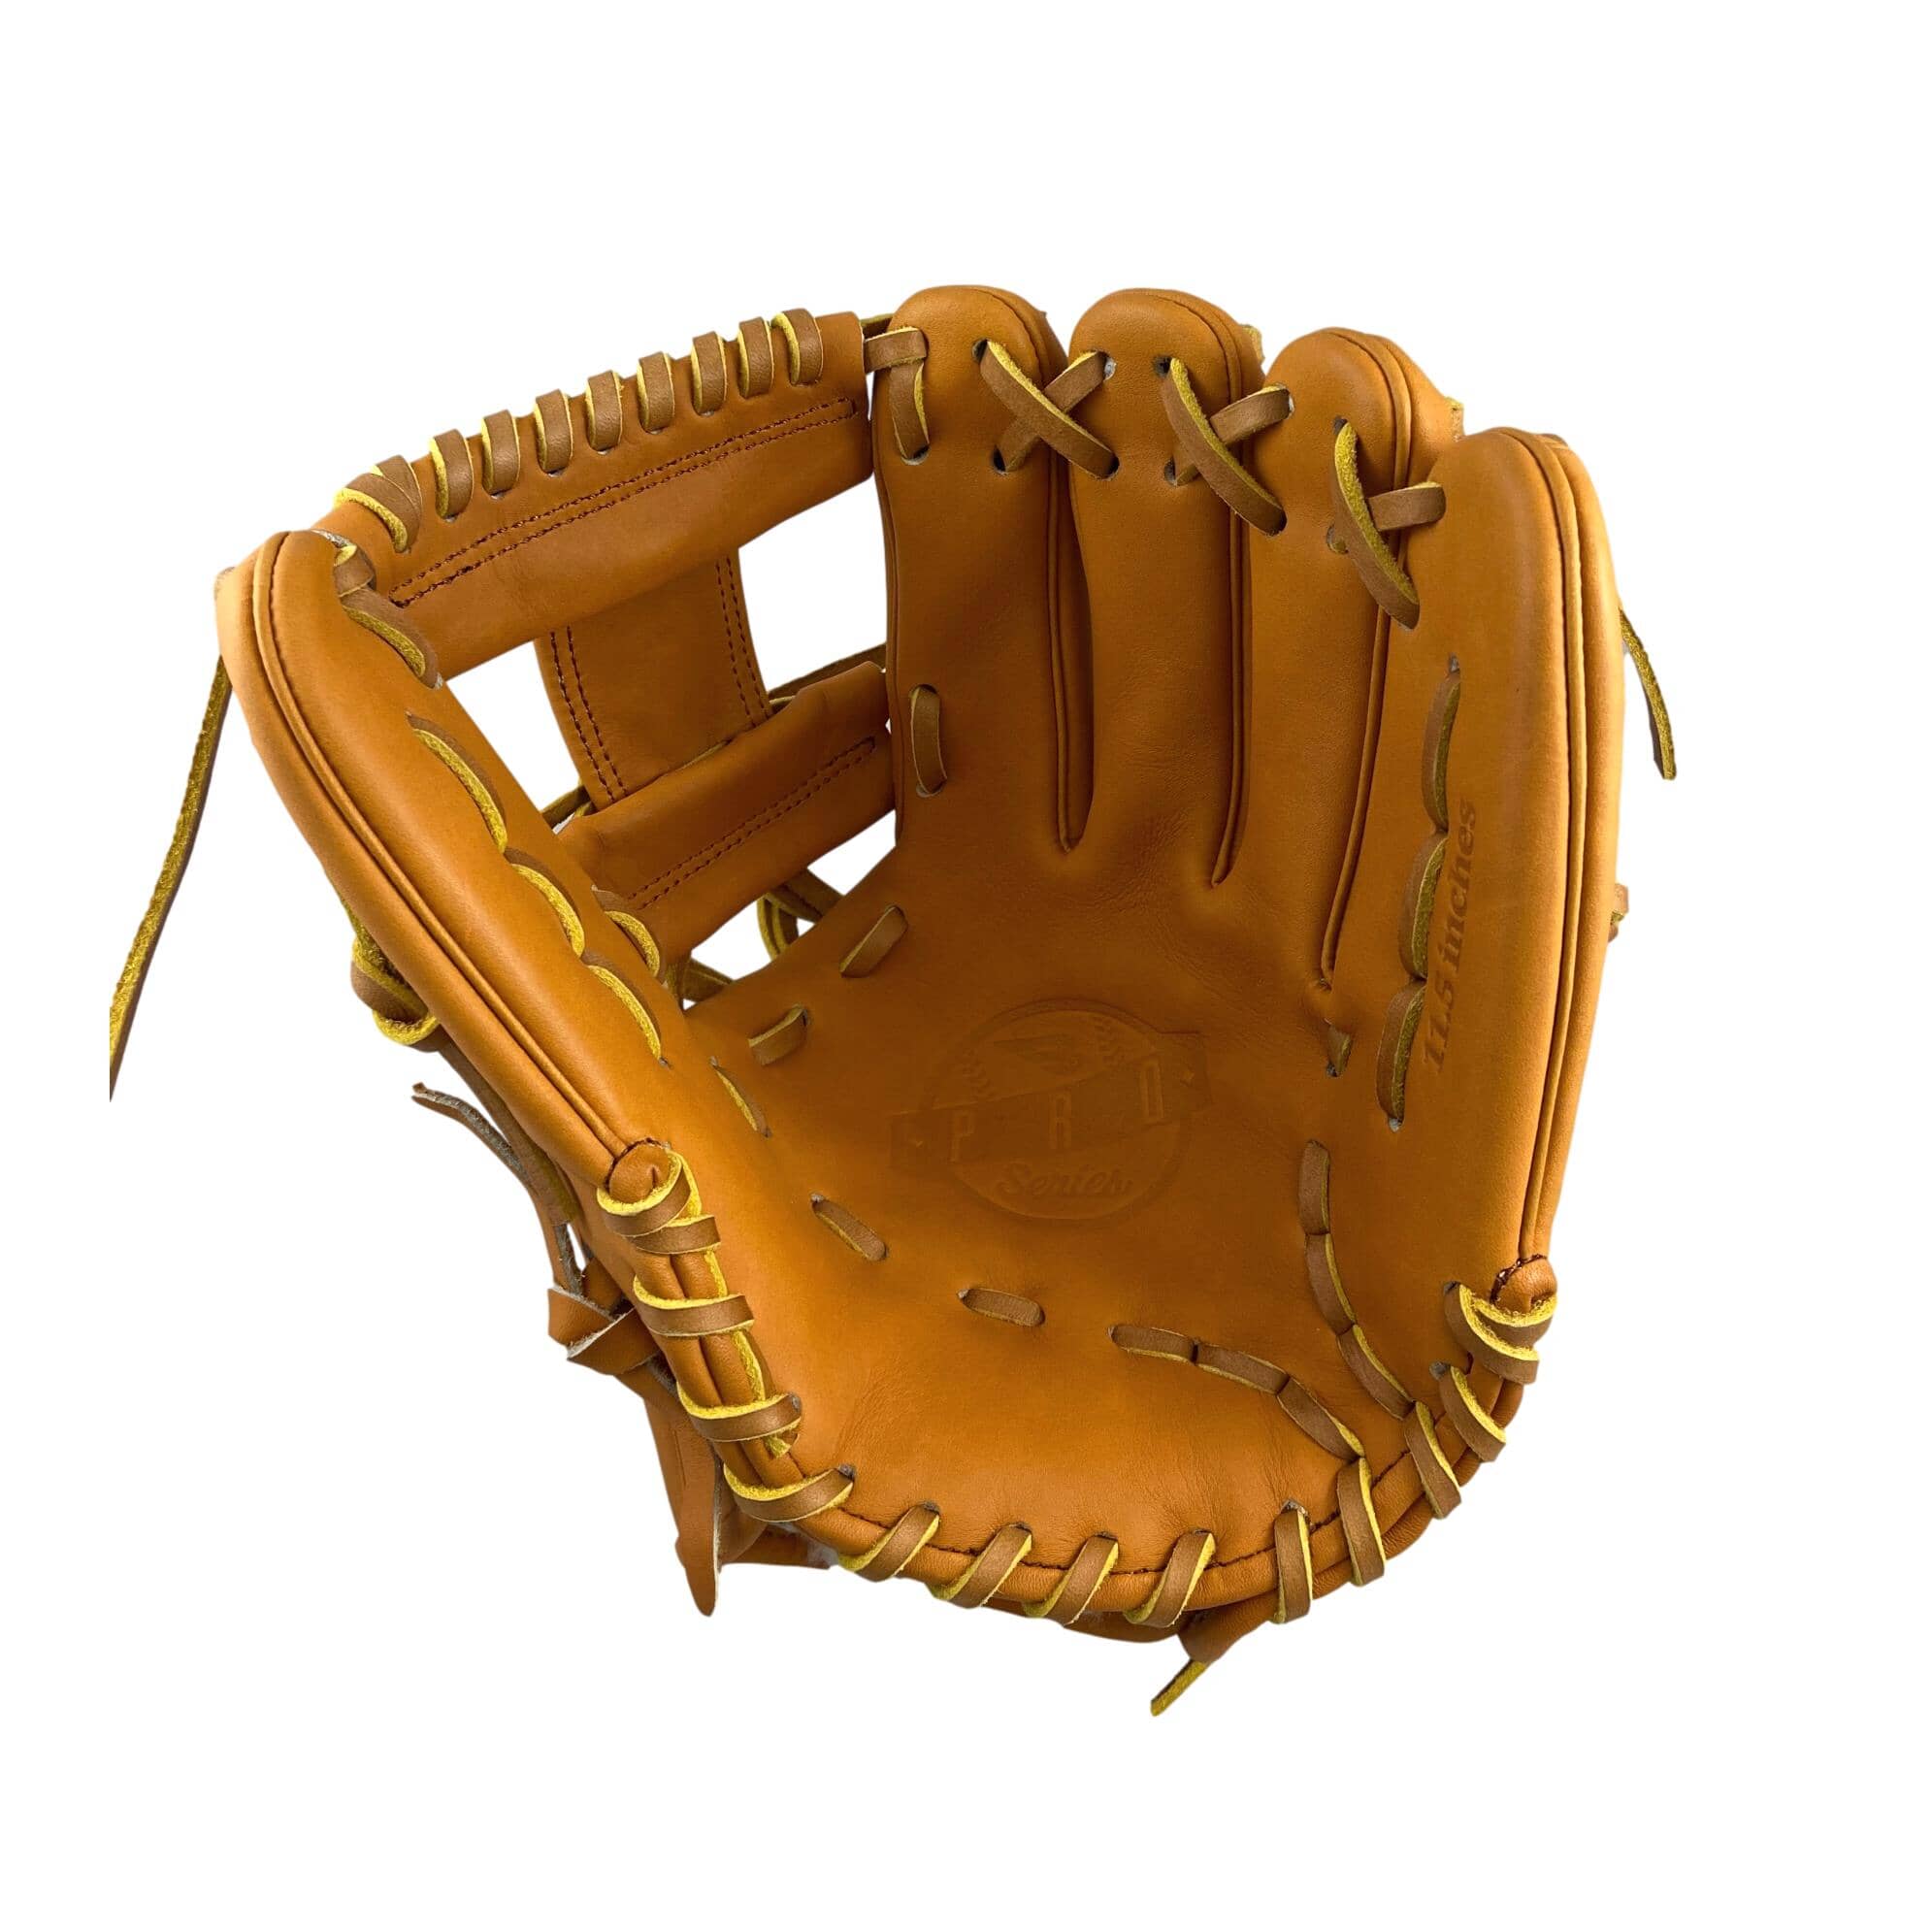 Series 11.5" I-Web Baseball Glove